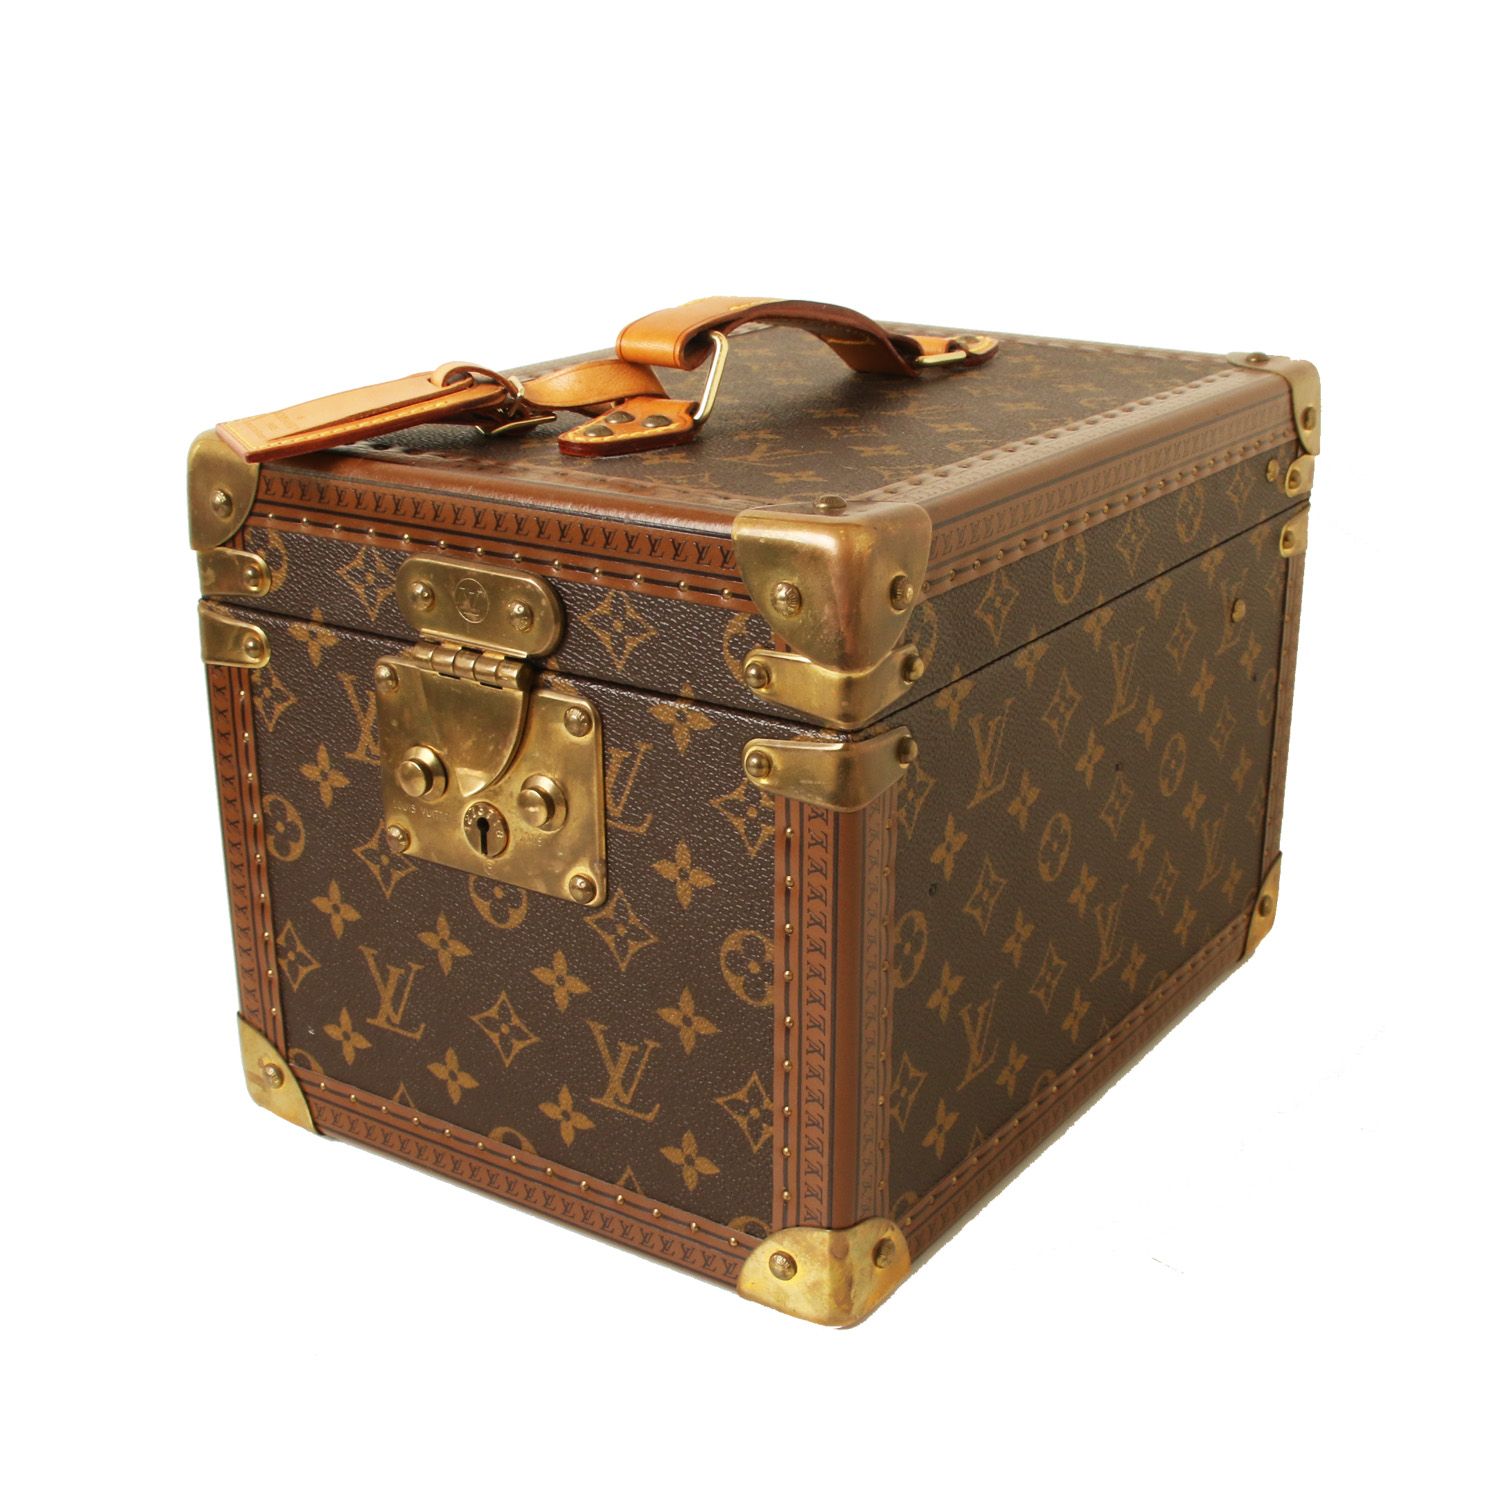 Sold at Auction: Louis Vuitton, Louis Vuitton LV Monogram Travel